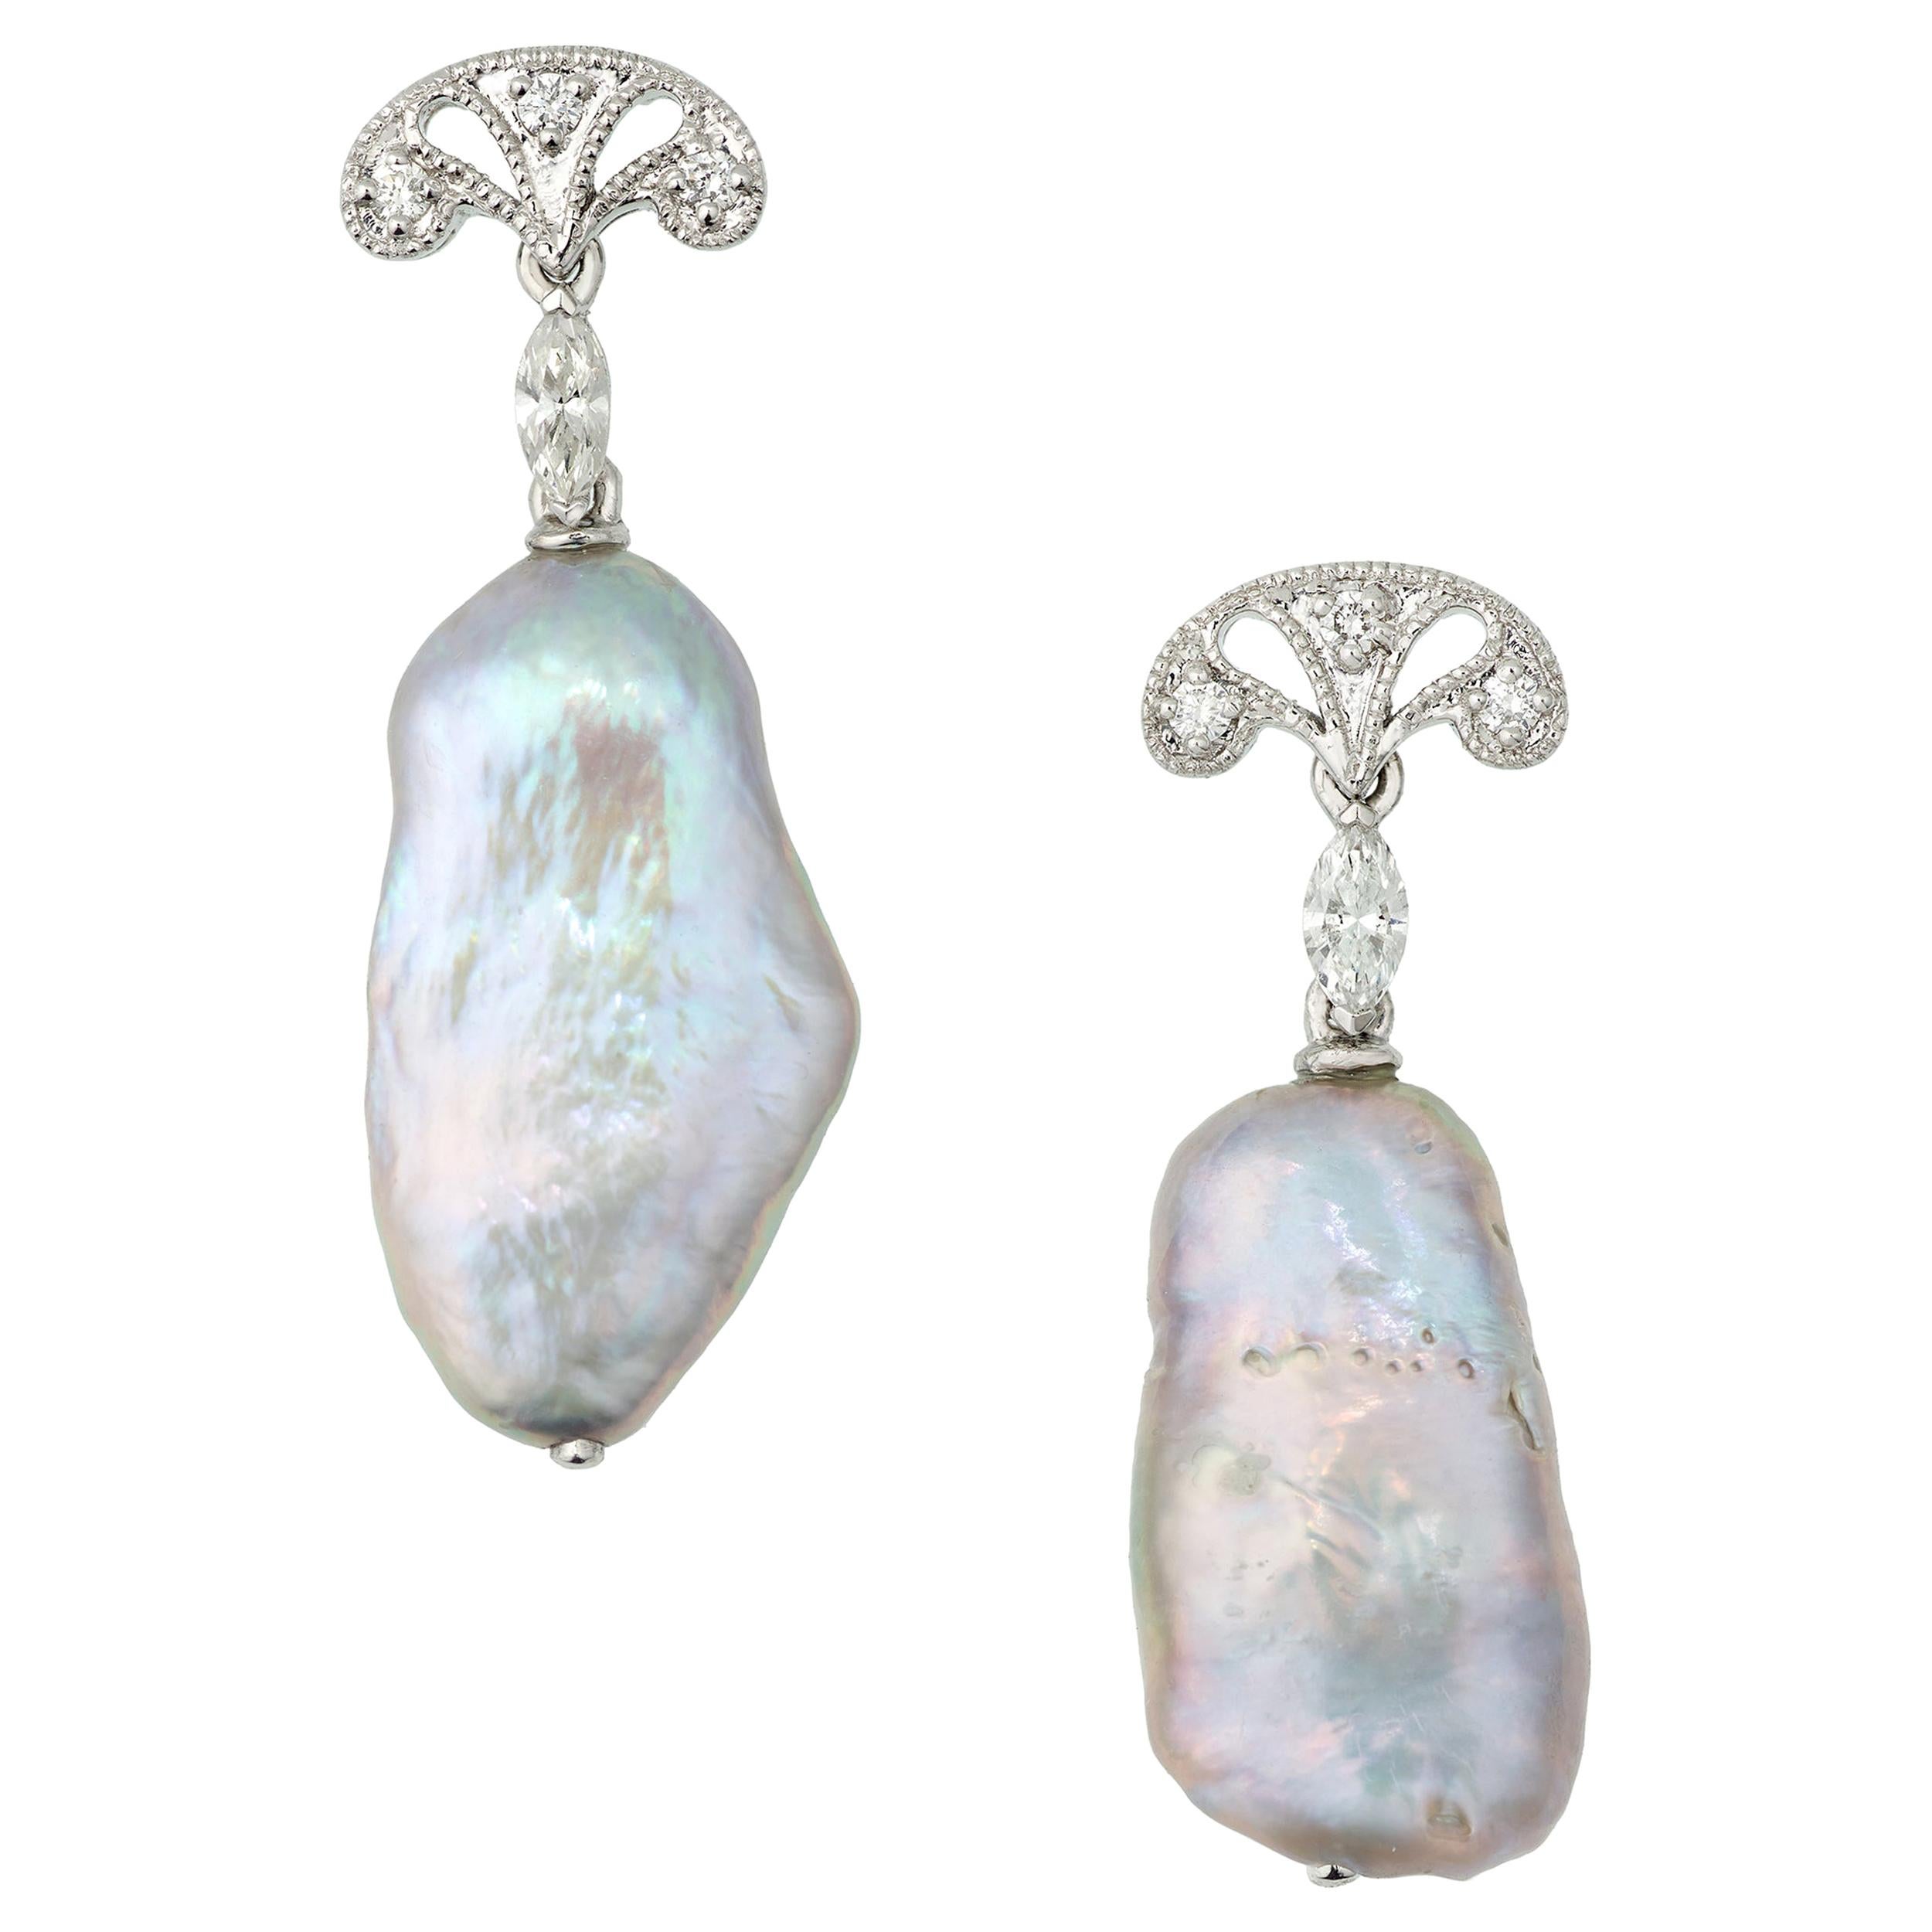 Boucles d'oreilles pendantes en platine serties de perles d'eau douce grises et de diamants